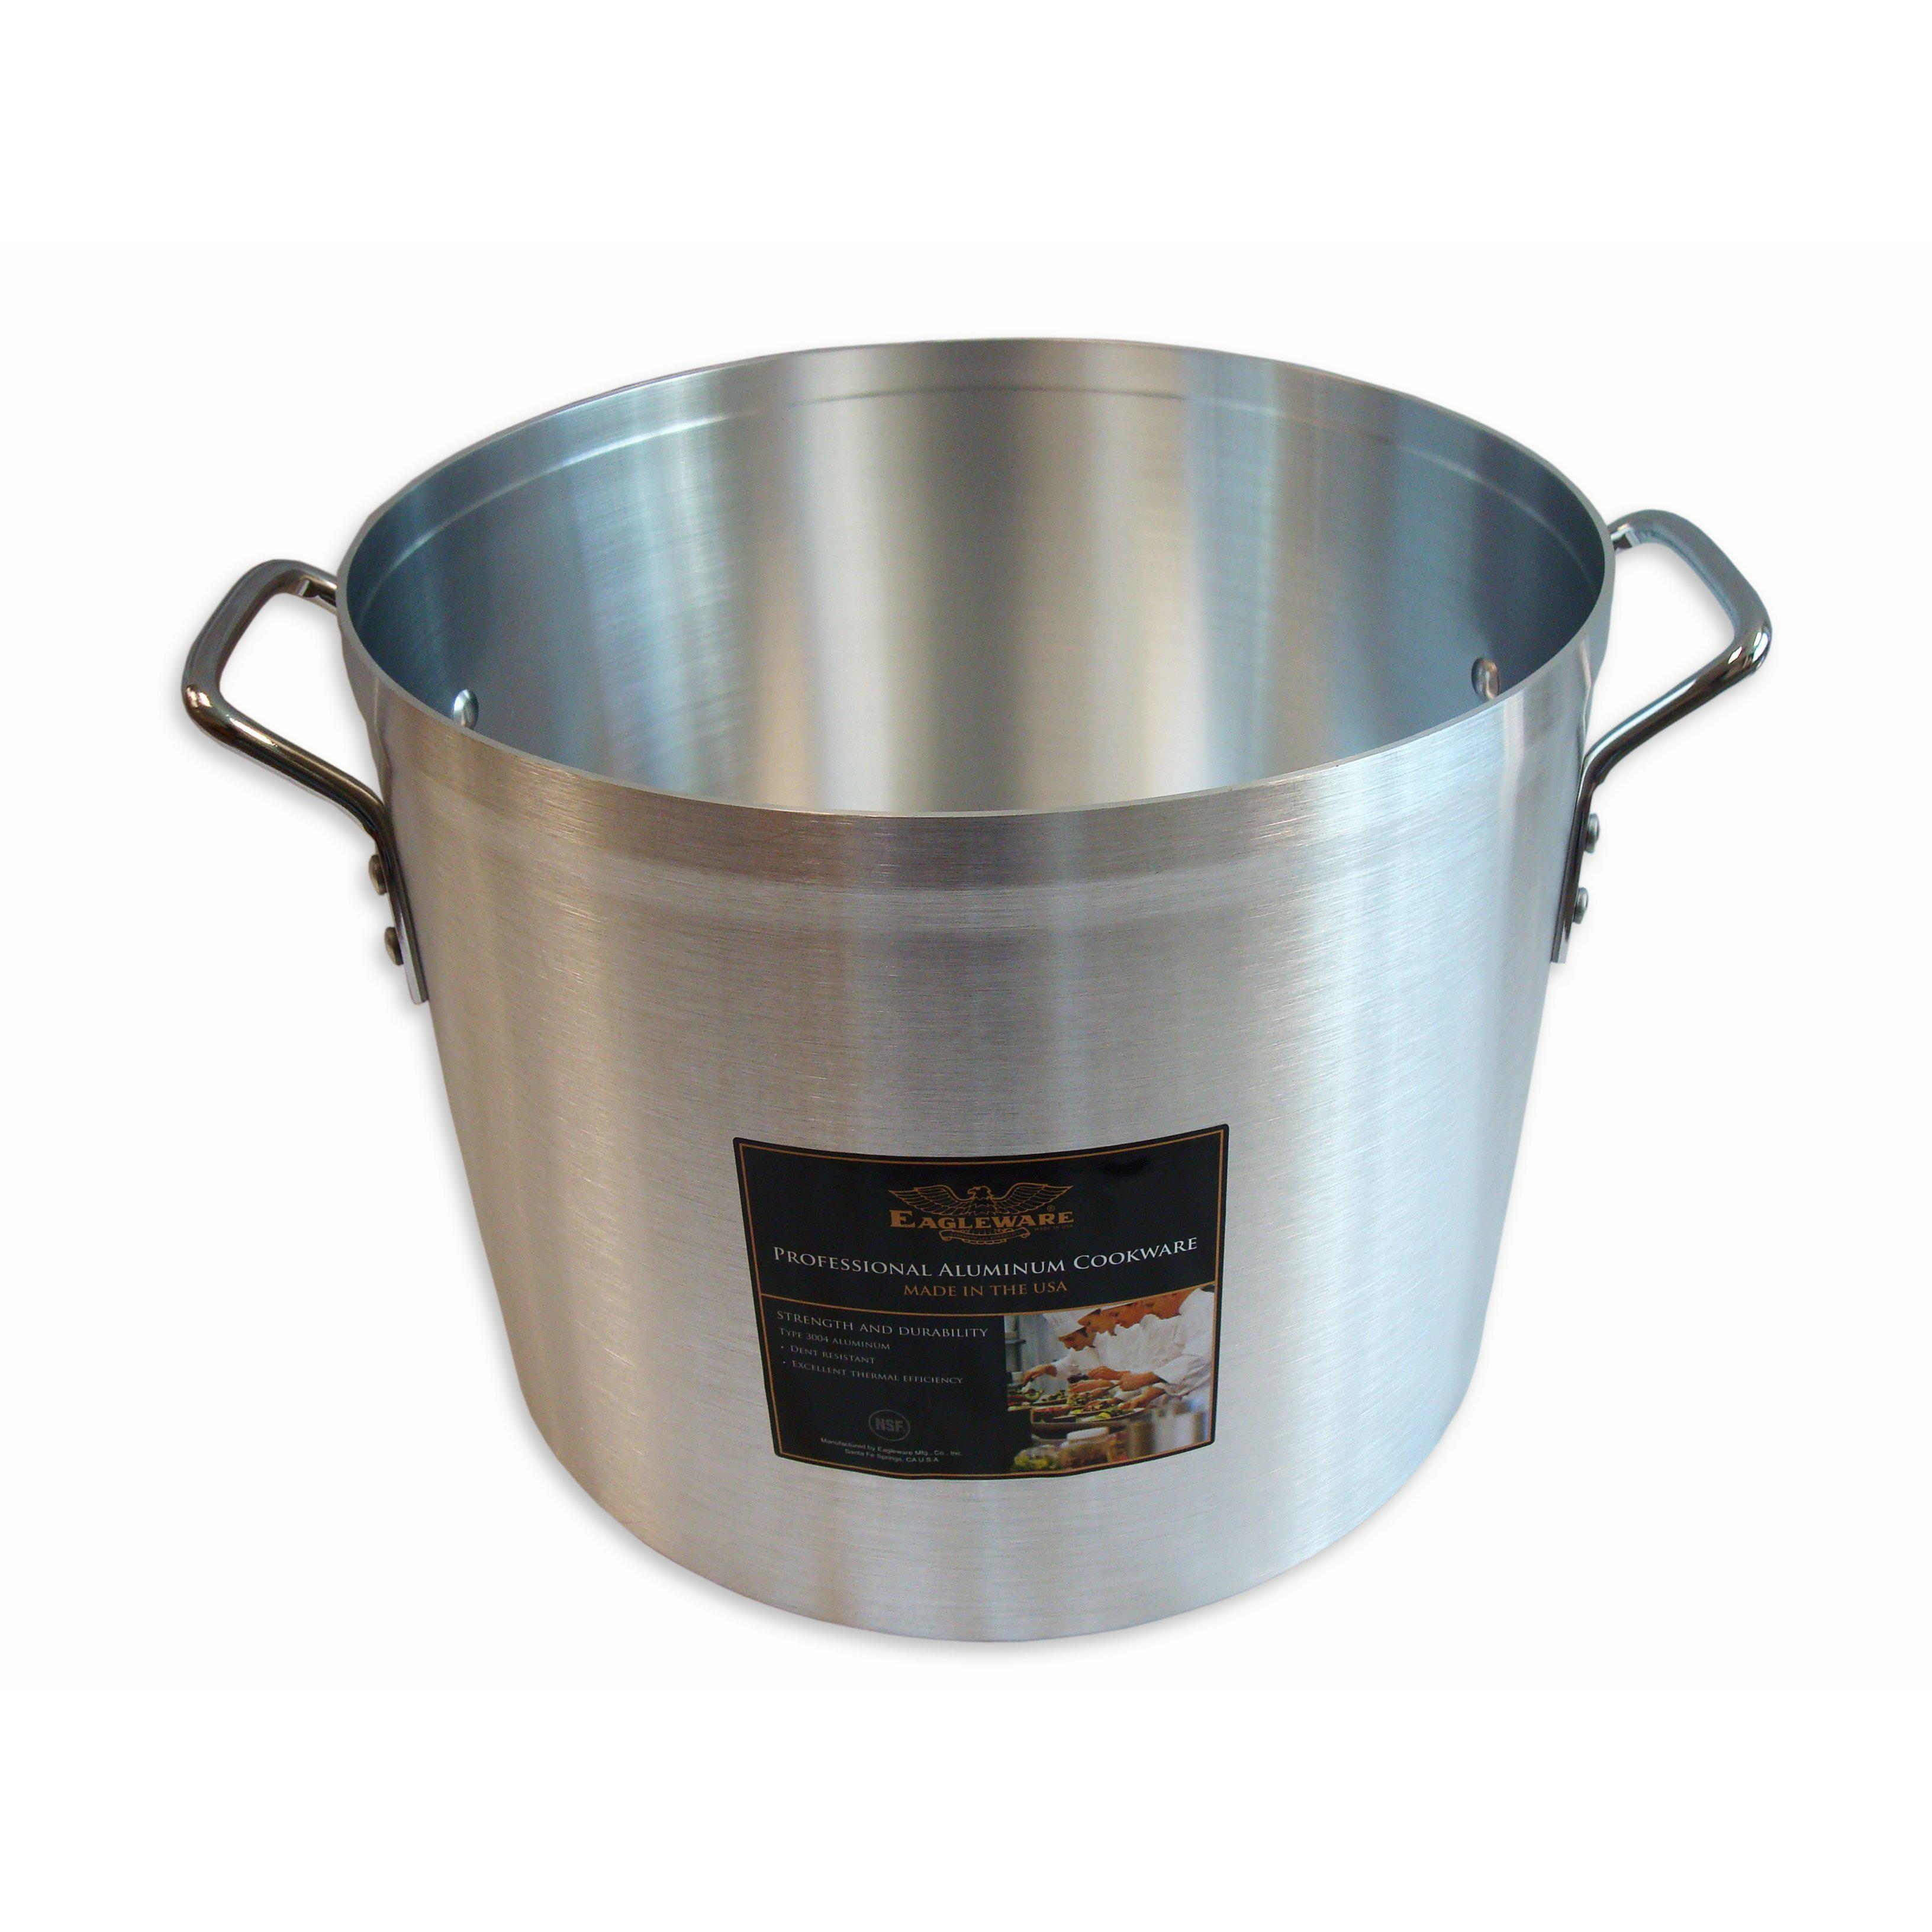 http://www.chefwareessentials.com/cdn/shop/products/eagleware-aluminum-stock-pot-professional-cookware.jpg?v=1617373522